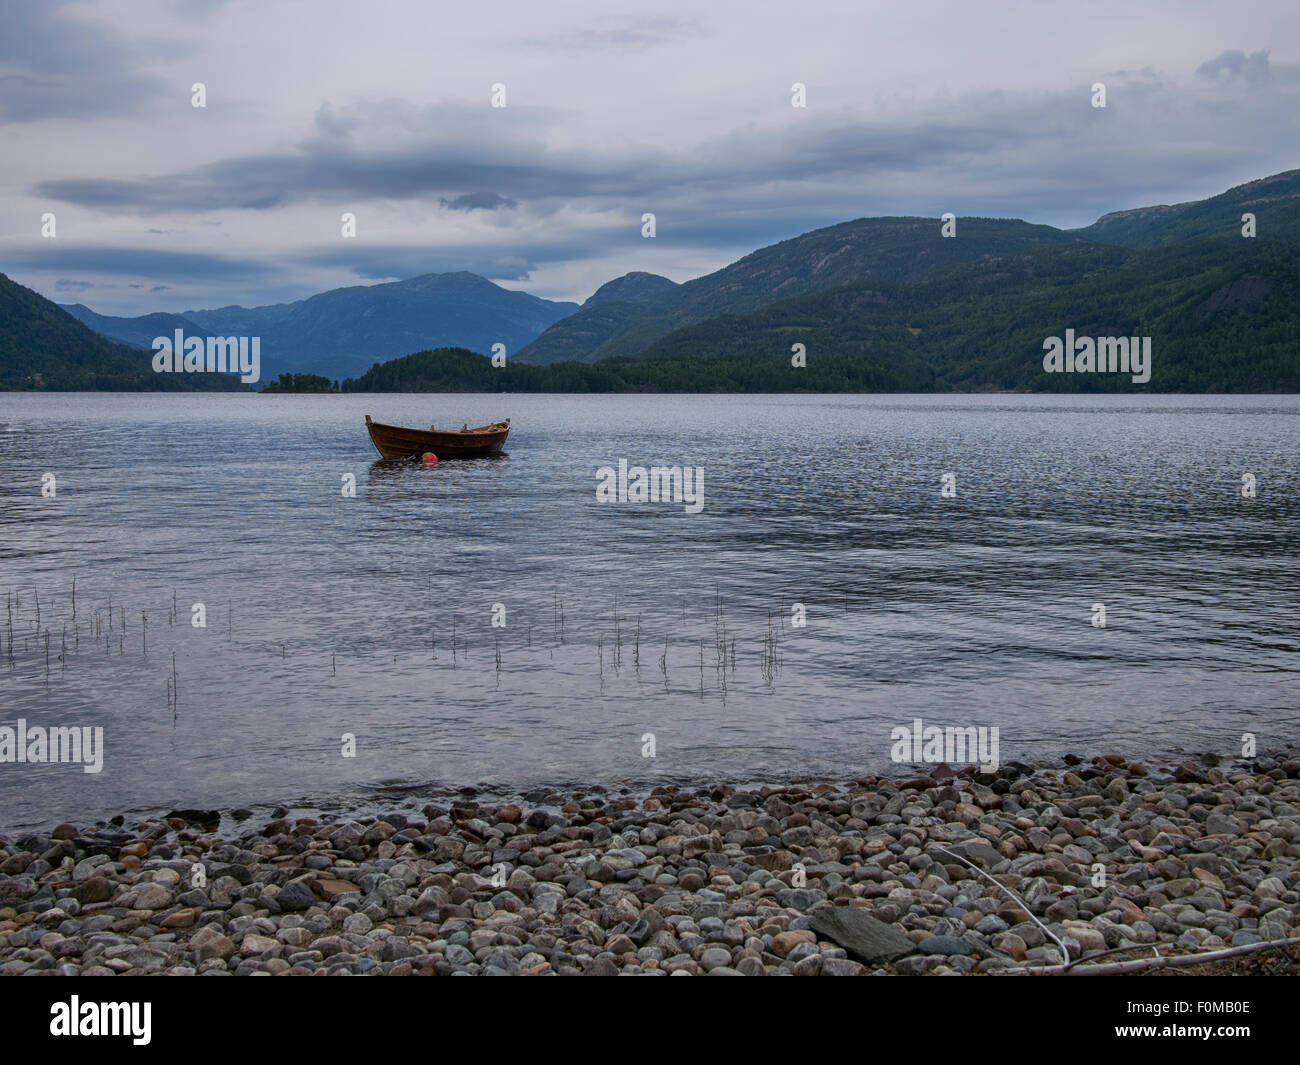 Norwegian Epic paysage, eau, terre, montagne, bateau en bois Banque D'Images